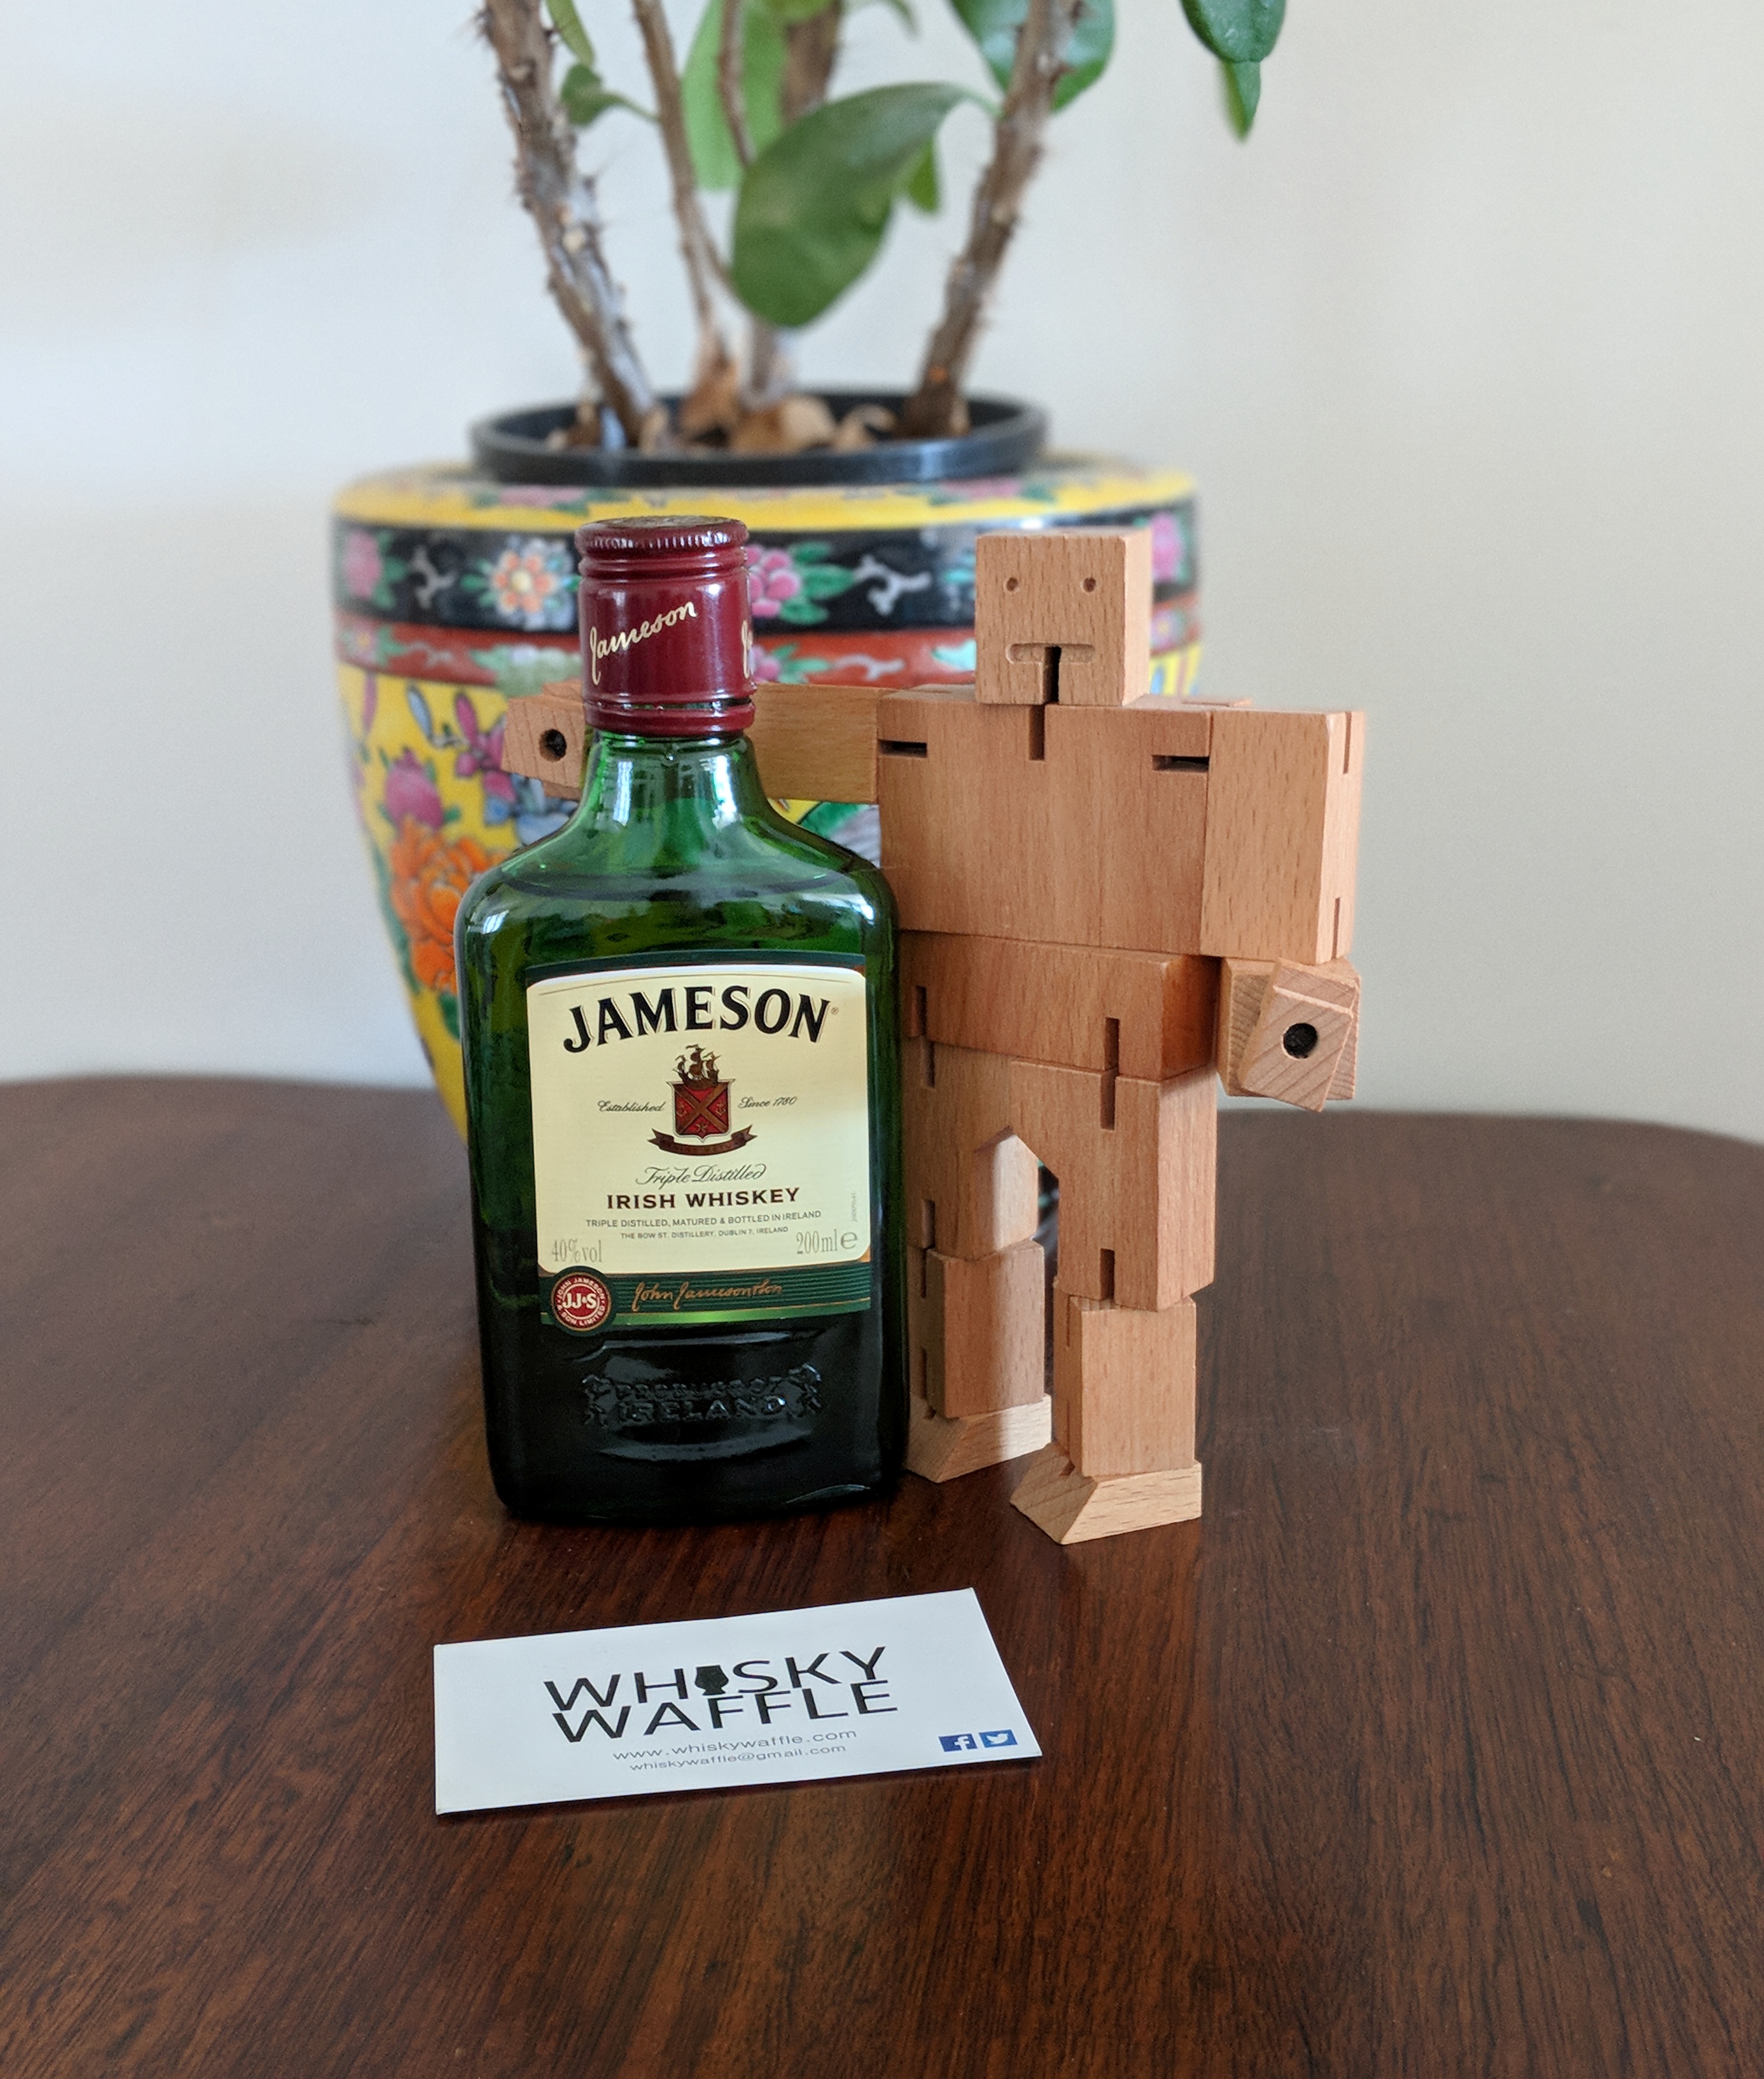 Whiskey Waffle Whisky | Jameson Irish